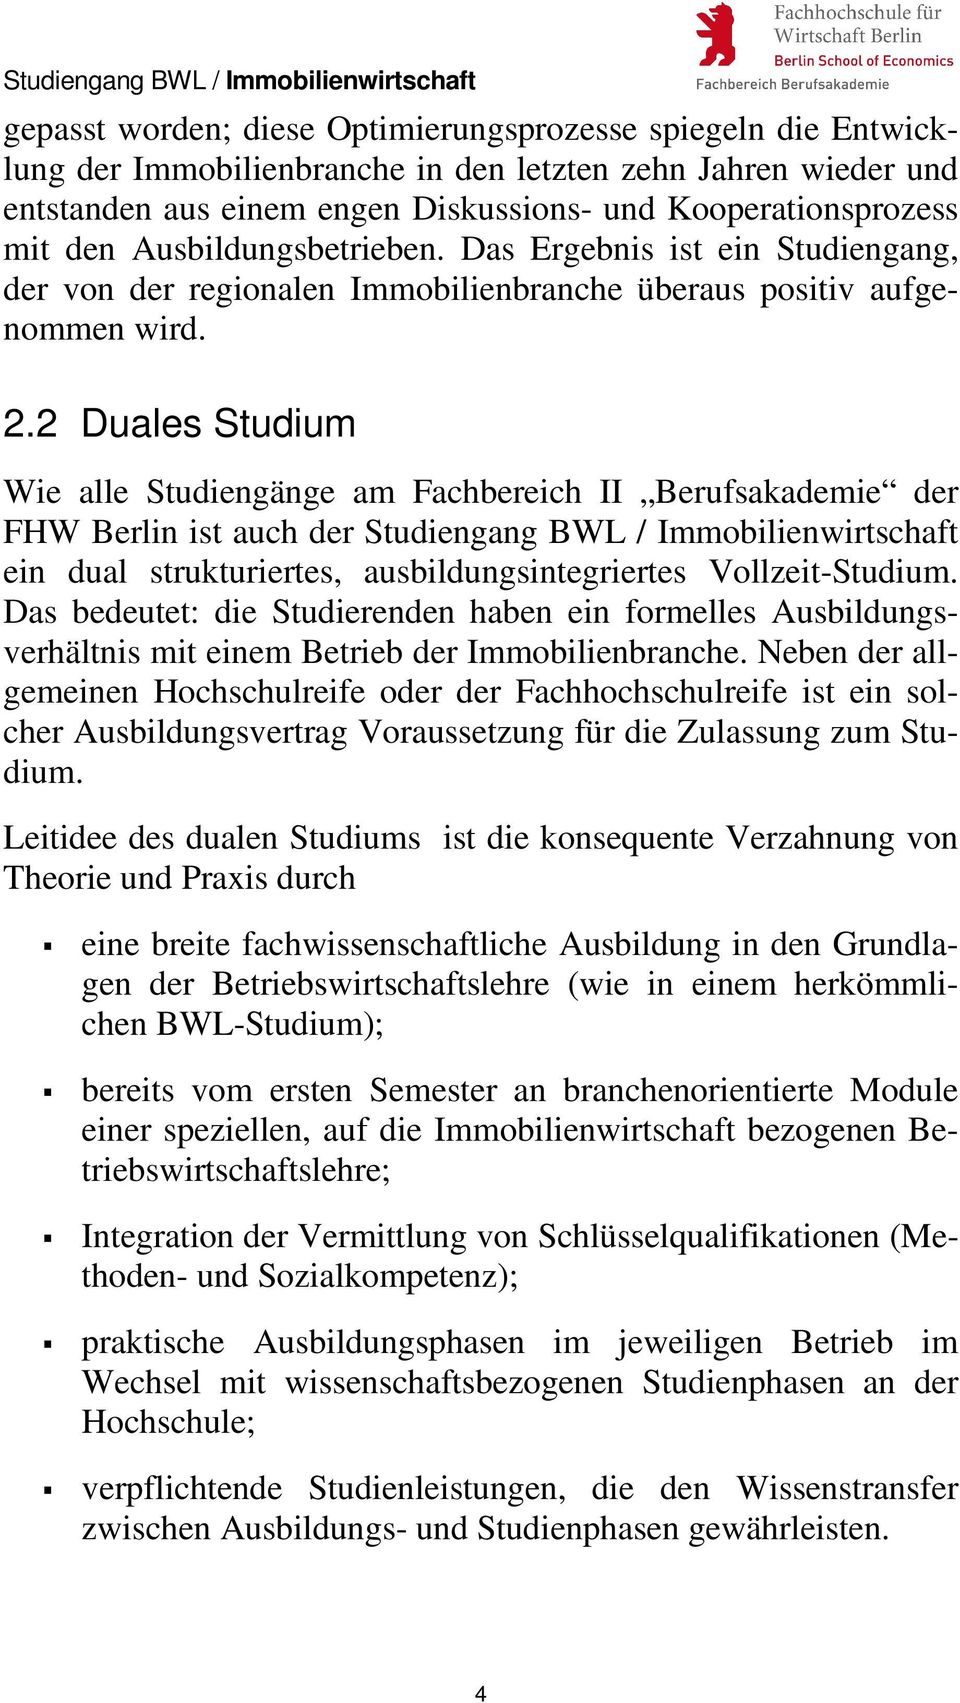 2 Duales Studium Wie alle Studiengänge am Fachbereich II Berufsakademie der FHW Berlin ist auch der Studiengang BWL / Immobilienwirtschaft ein dual strukturiertes, ausbildungsintegriertes